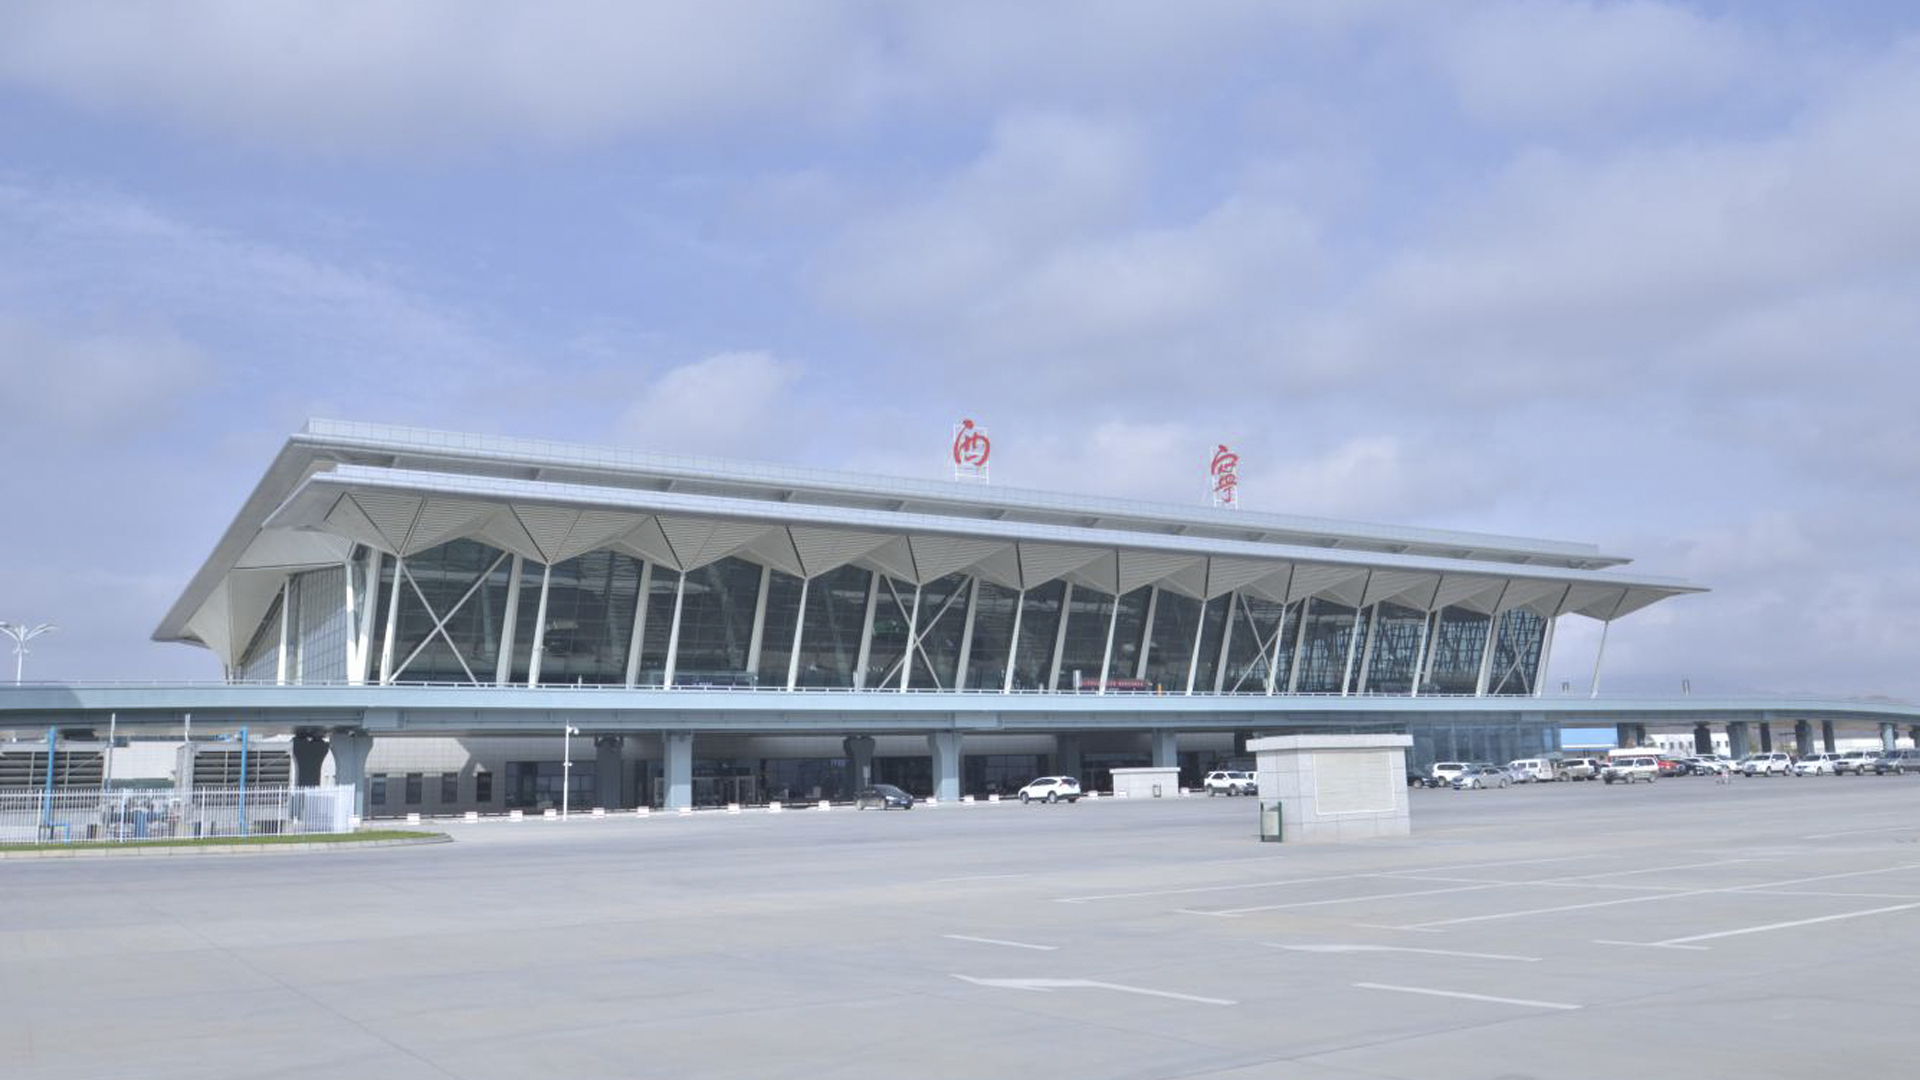 扩建后的西宁曹家堡国际机 场屋面分为a\b\c三段,a段为与原老航站楼的